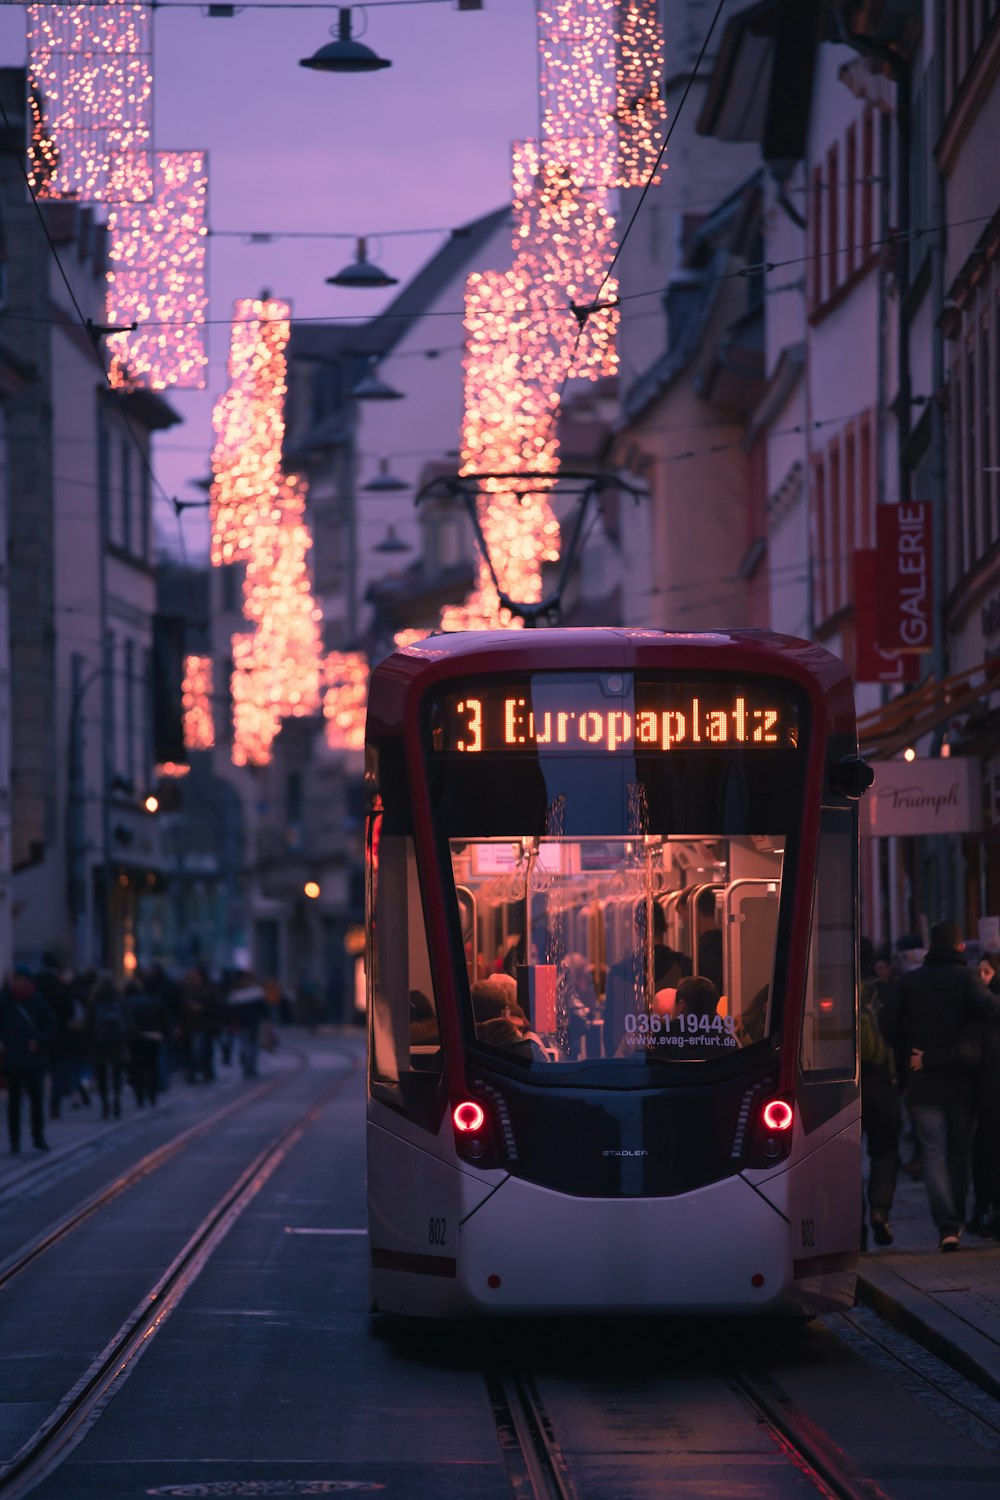 Un bus rouge et blanc roulant dans une rue